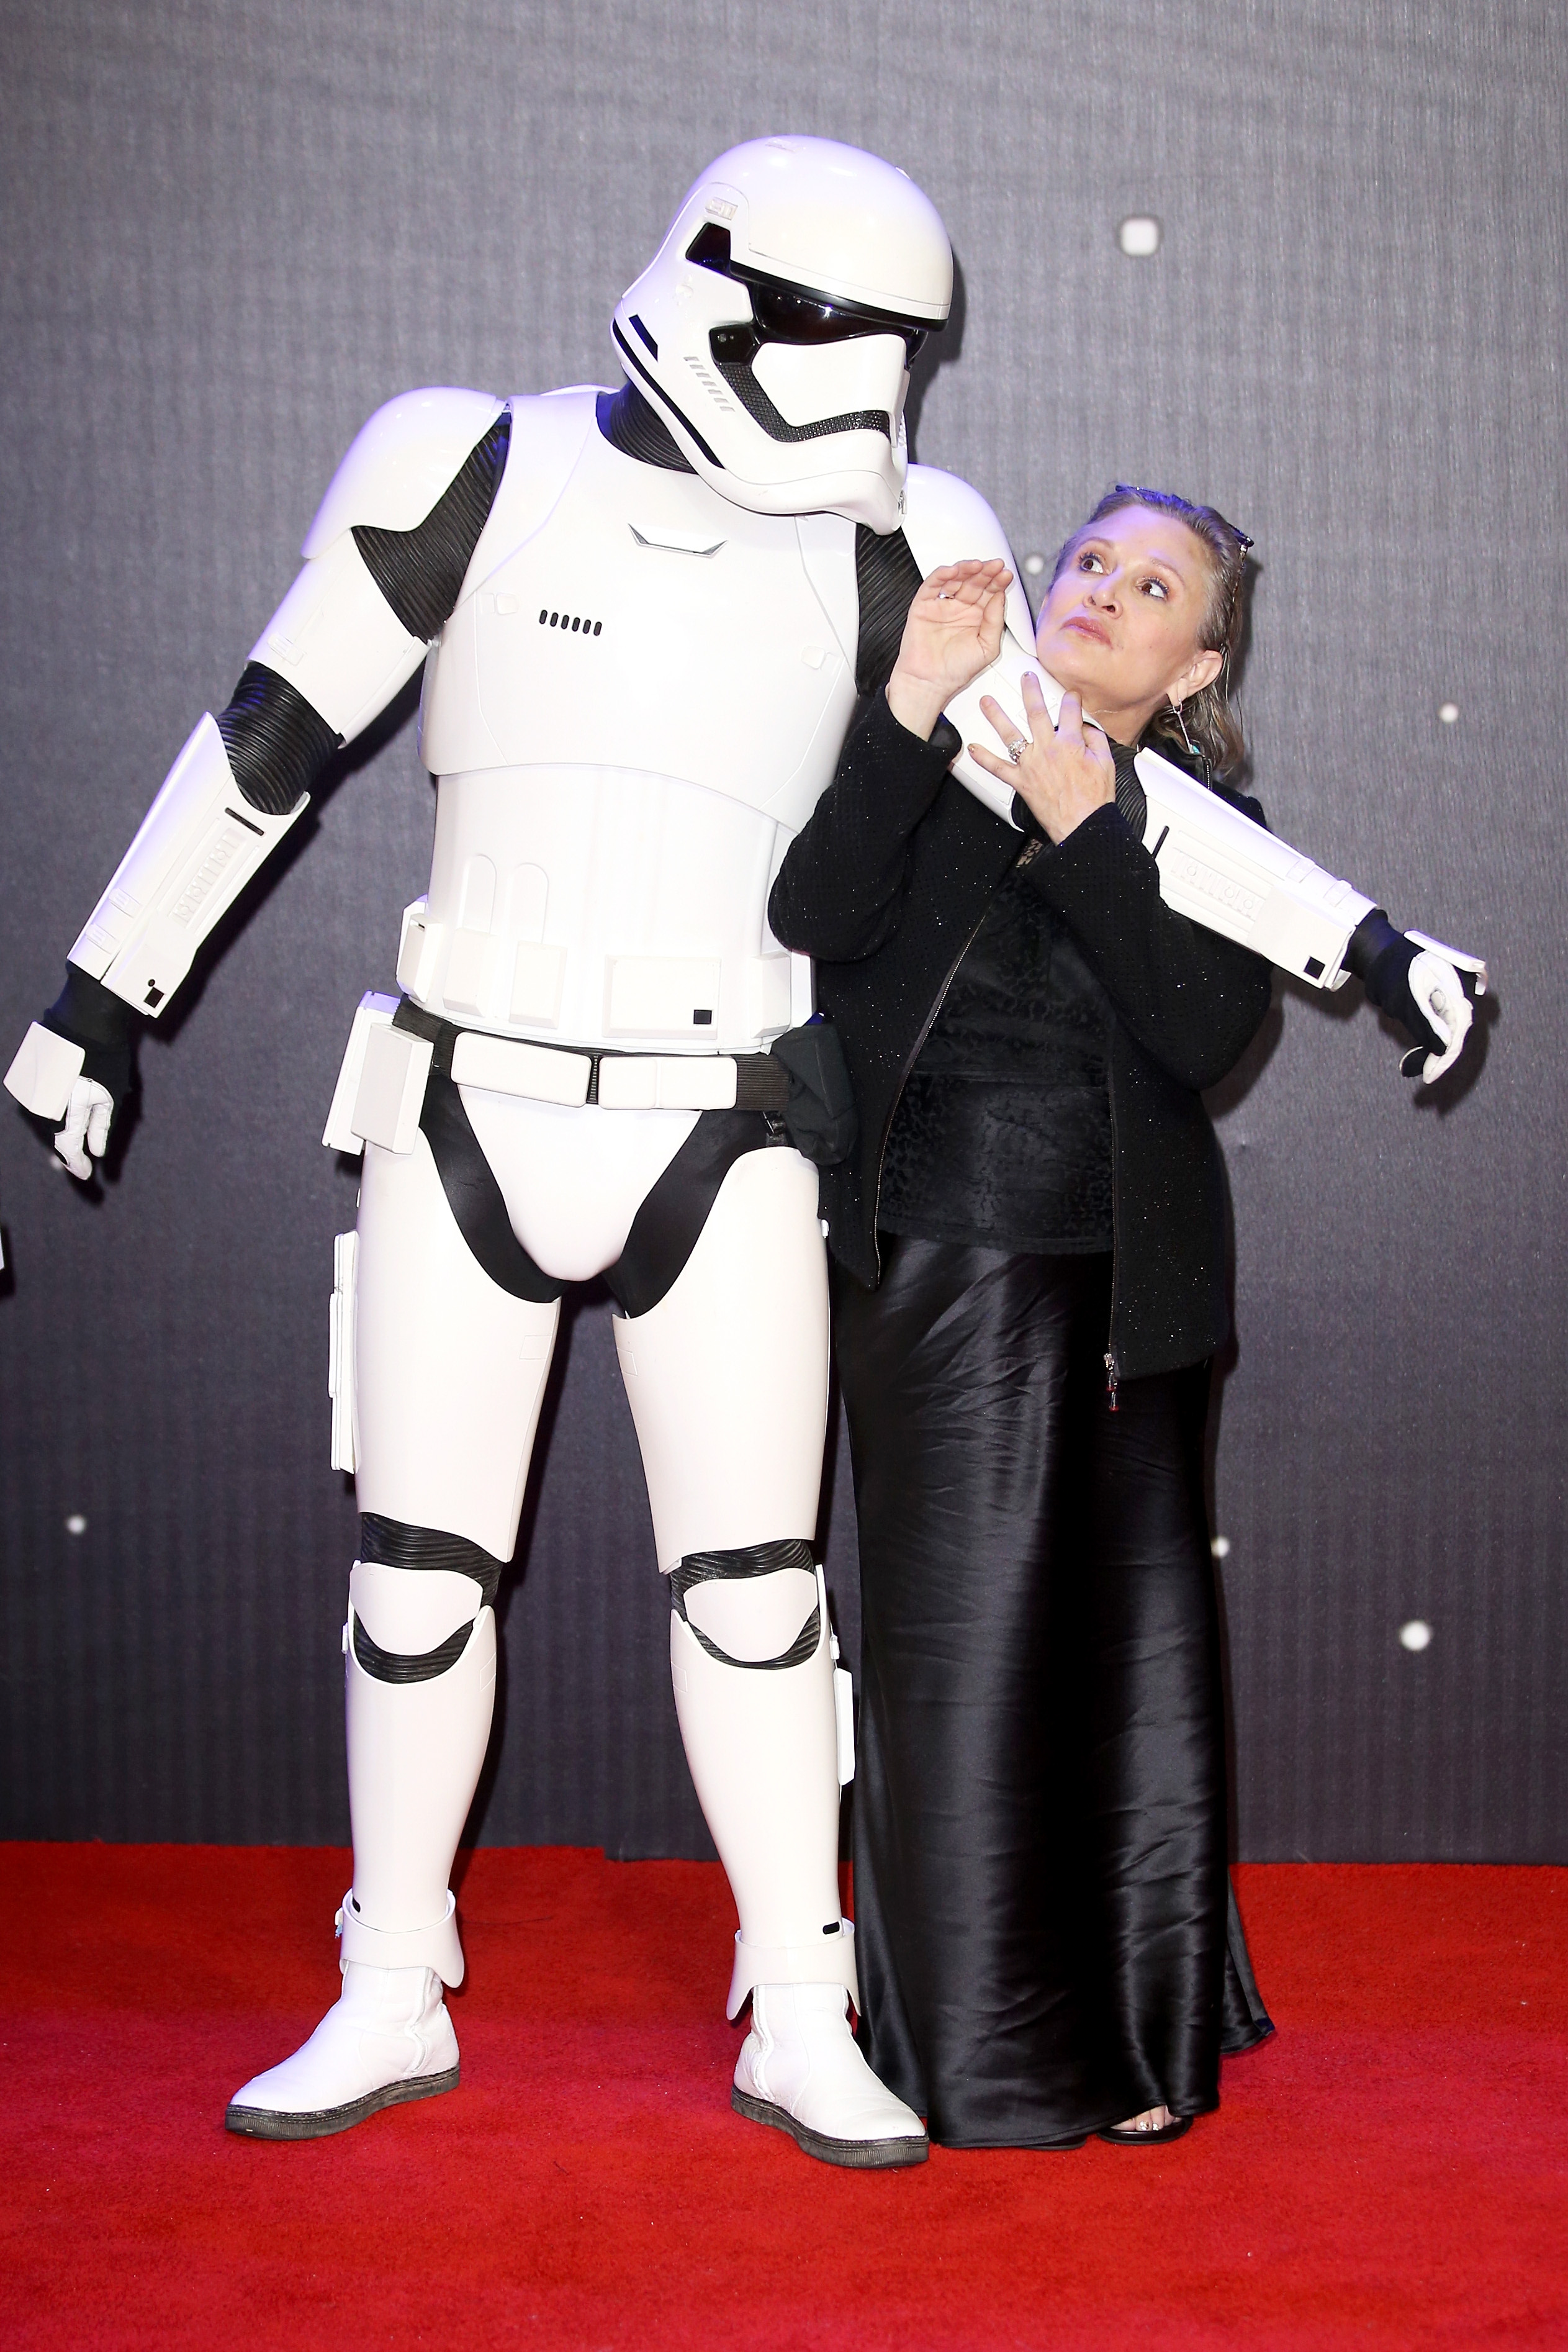 Carrie fisher y un Stormtrooper de "Star Wars" en el estreno europeo de "Star Wars: The Force Awakens" en Londres, 2015 | Foto: Getty Images